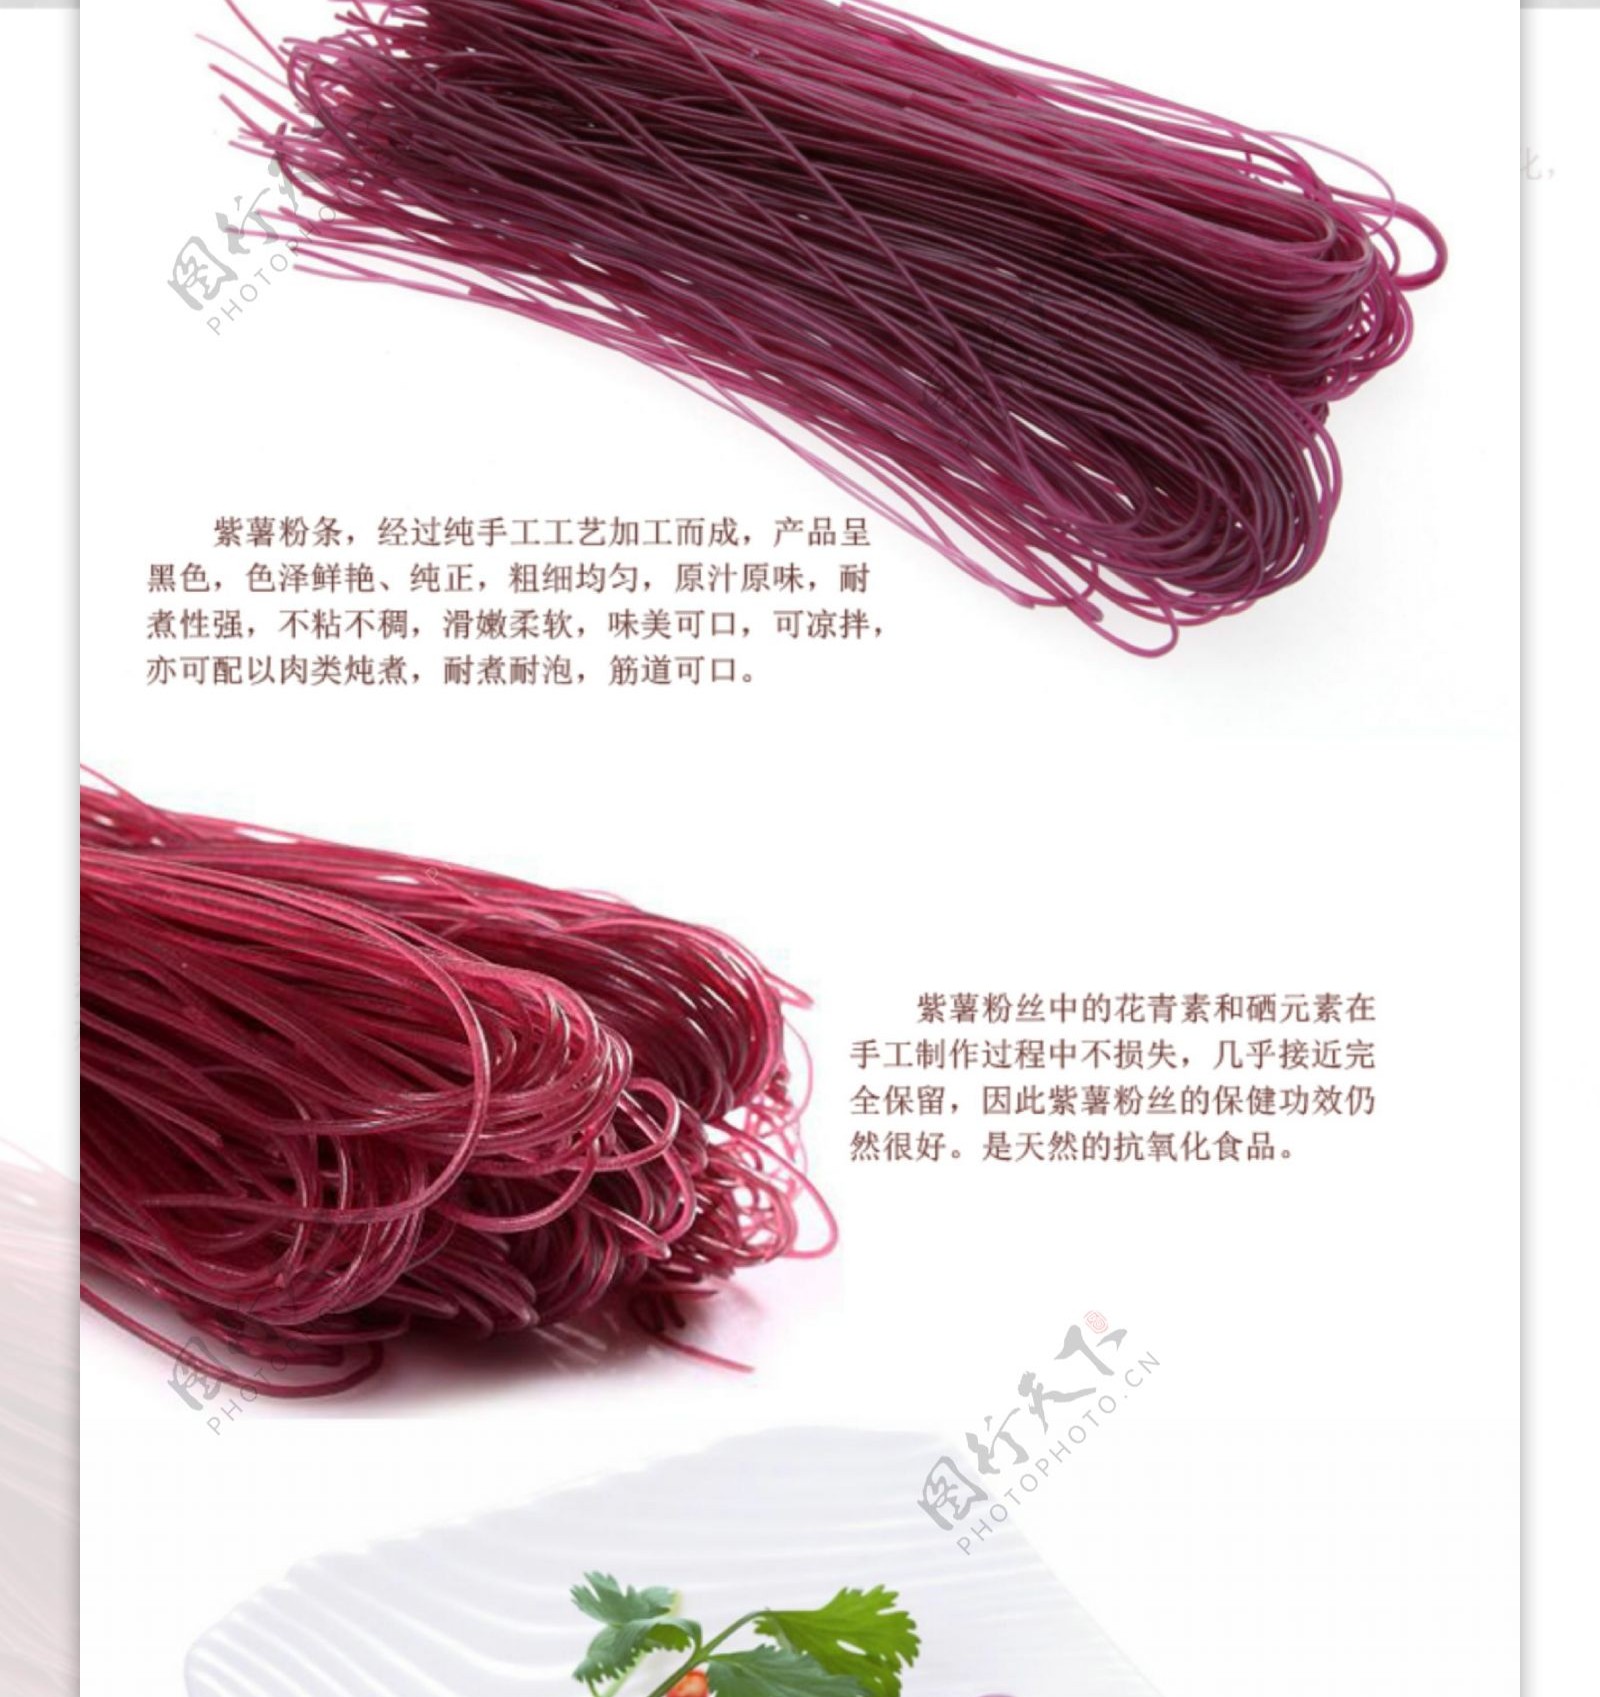 紫薯粉条商品详细摸版高清PSD下载